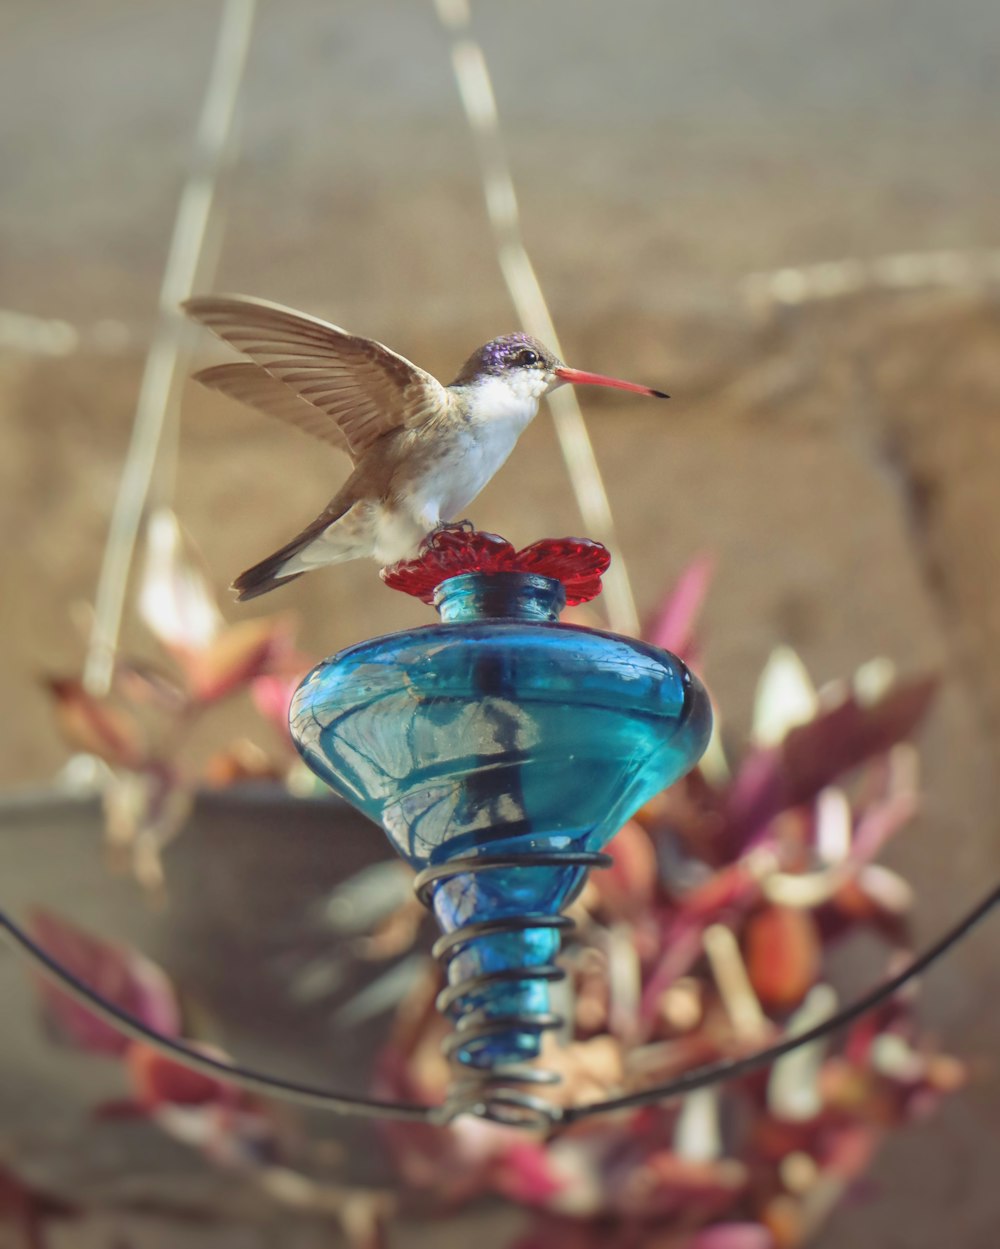 Un colibri perché sur une mangeoire à oiseaux bleue